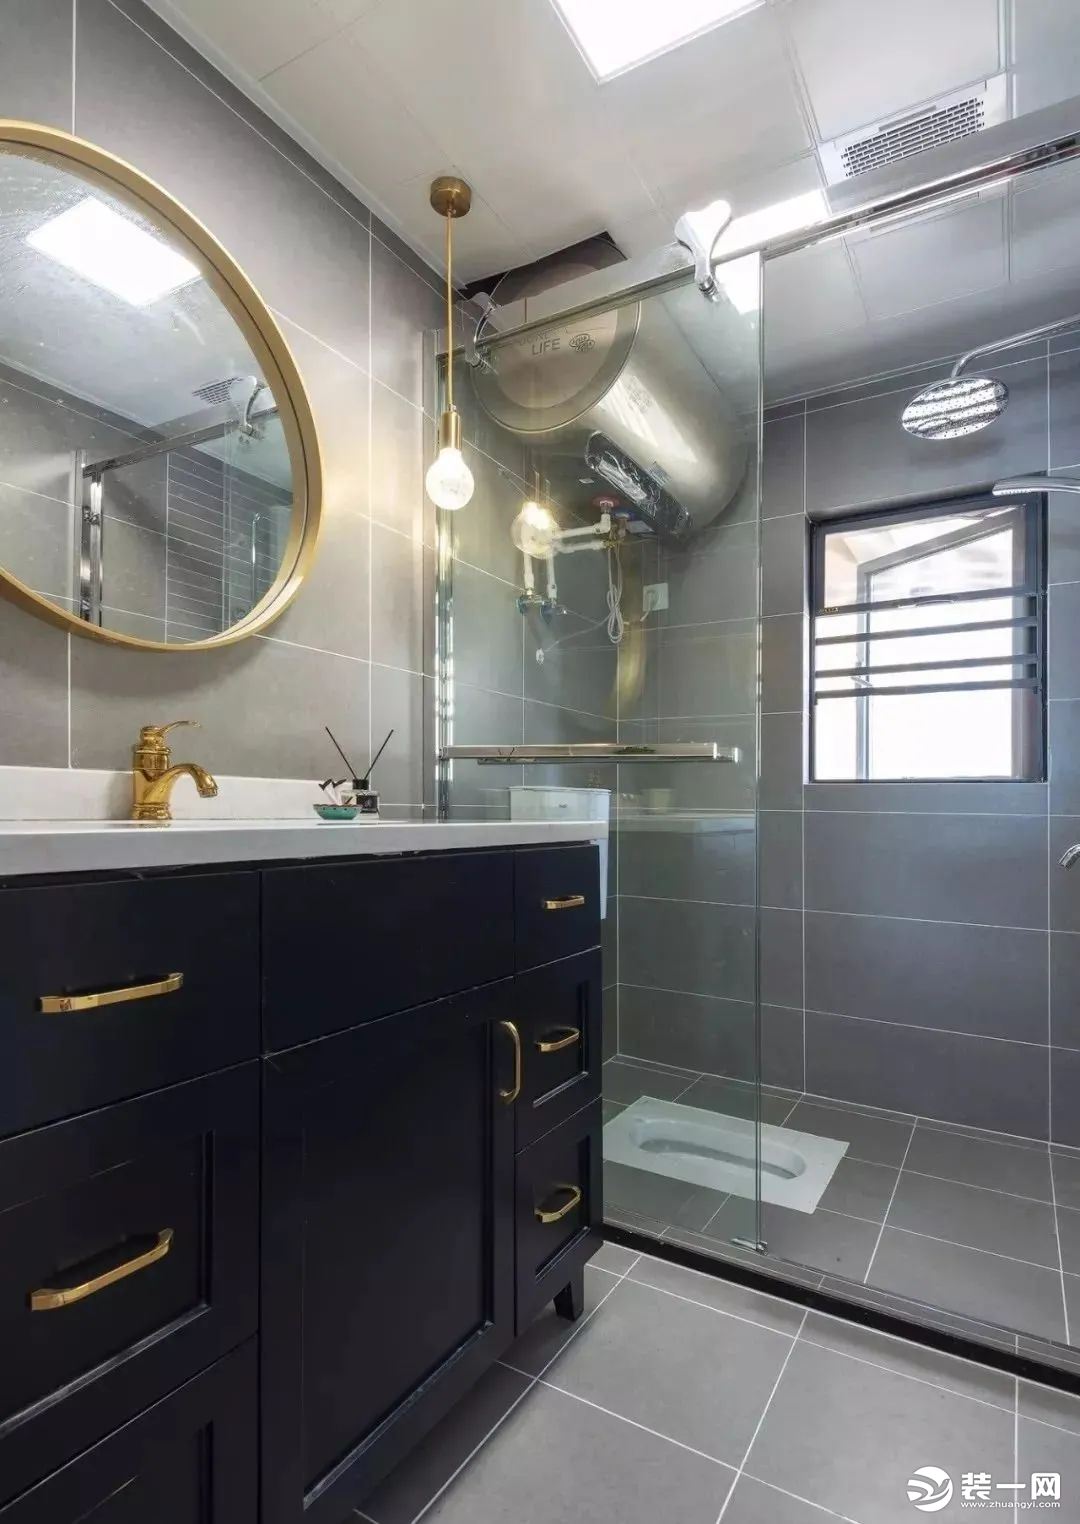 卫生间整体通铺灰色瓷砖加白色美缝，金色元素相互穿插使用，玻璃淋浴房尽量做到干湿分